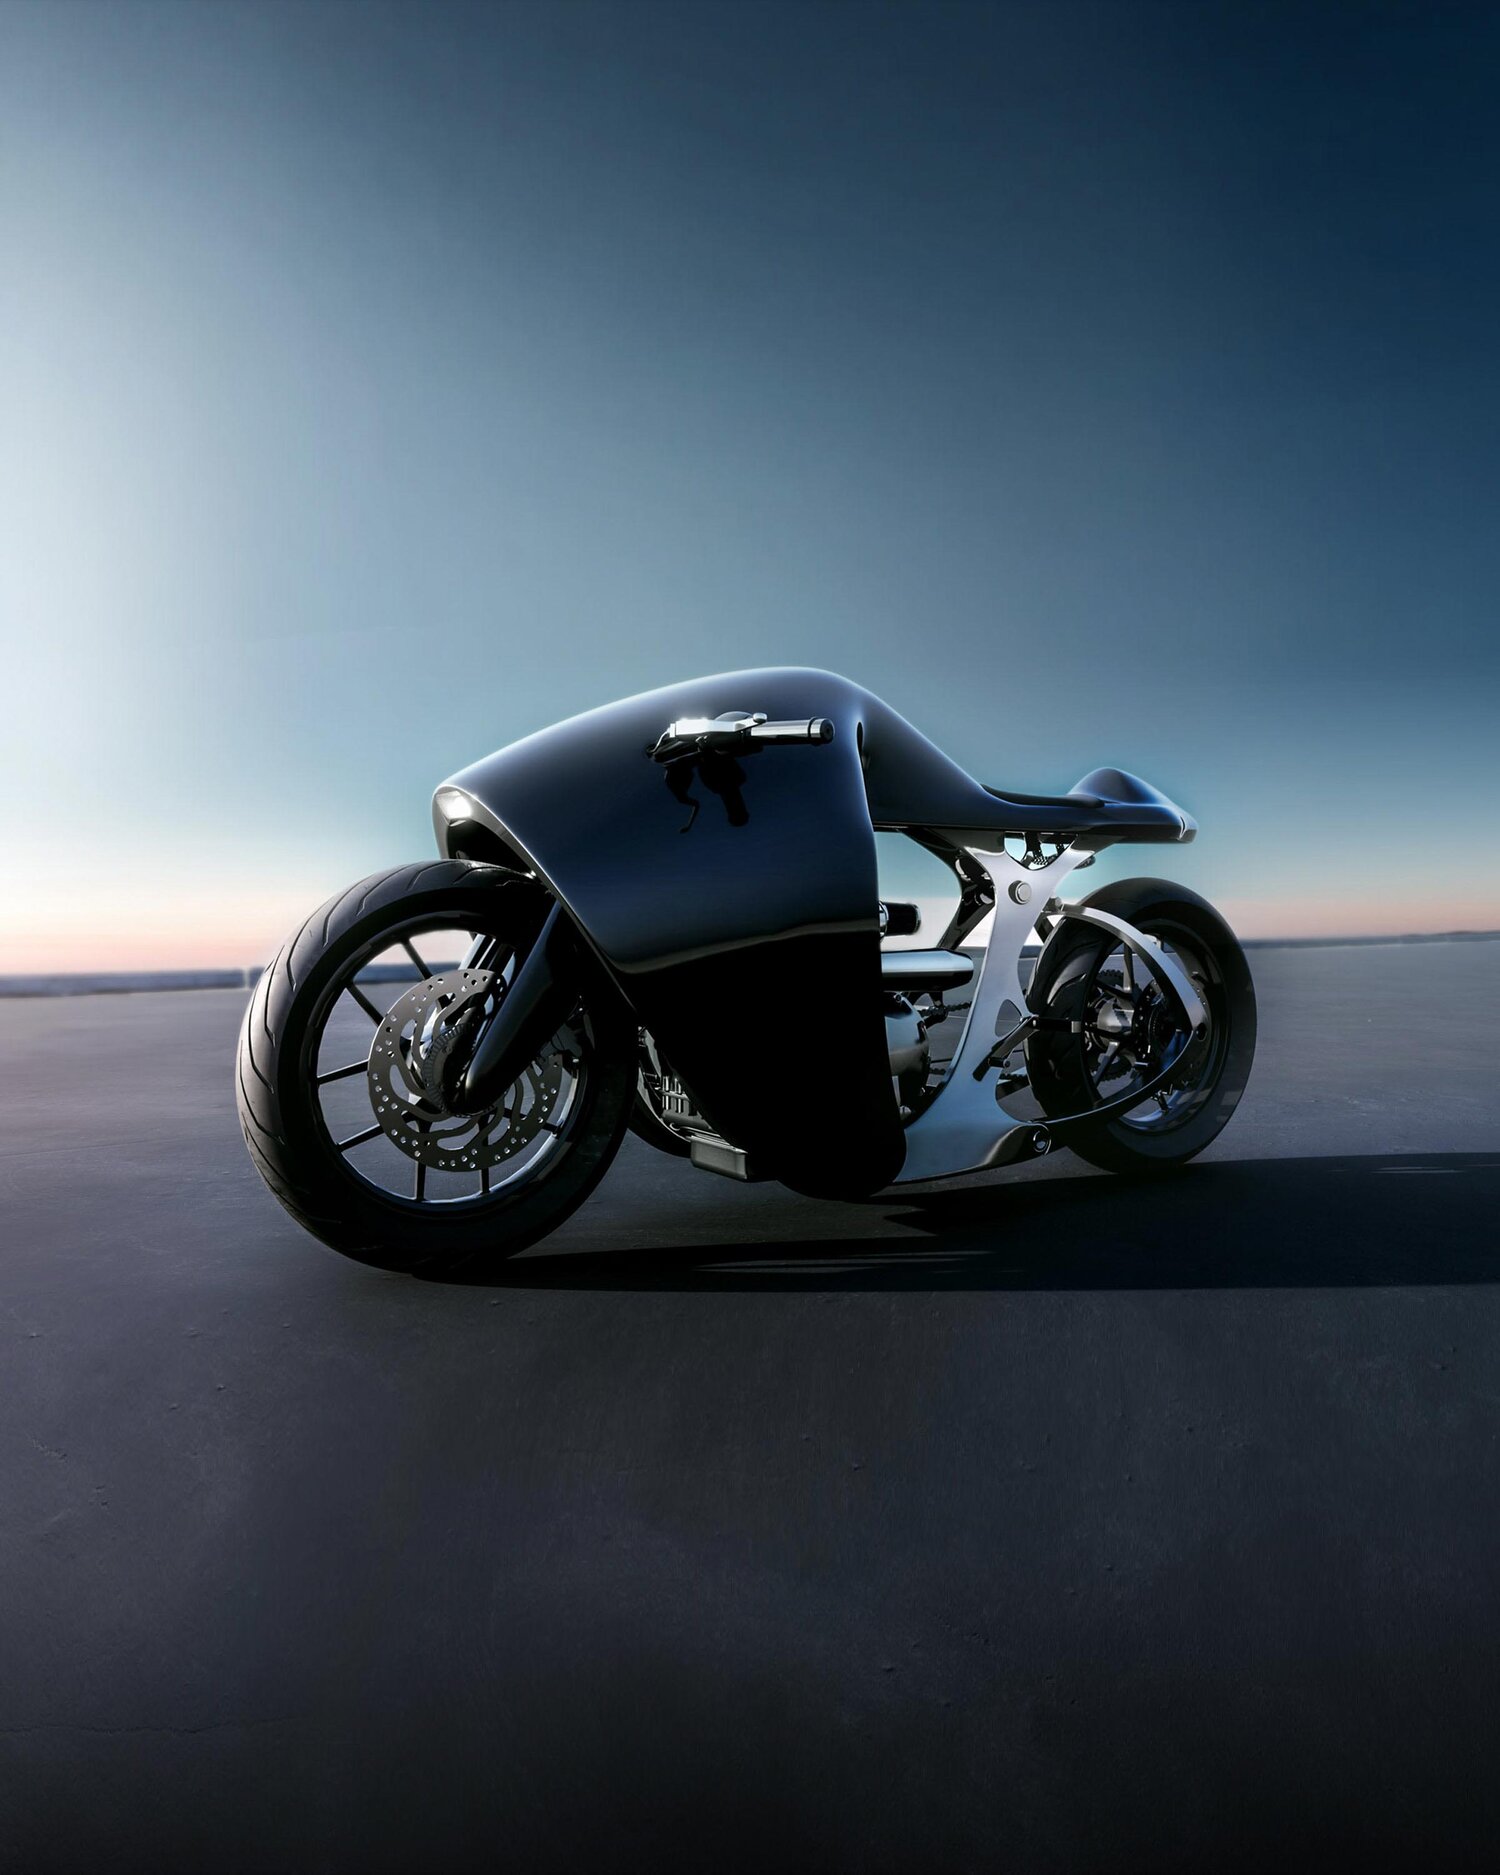 imagen 6 de The Supermarine. La nueva y espectacular motocicleta de Bandit9.